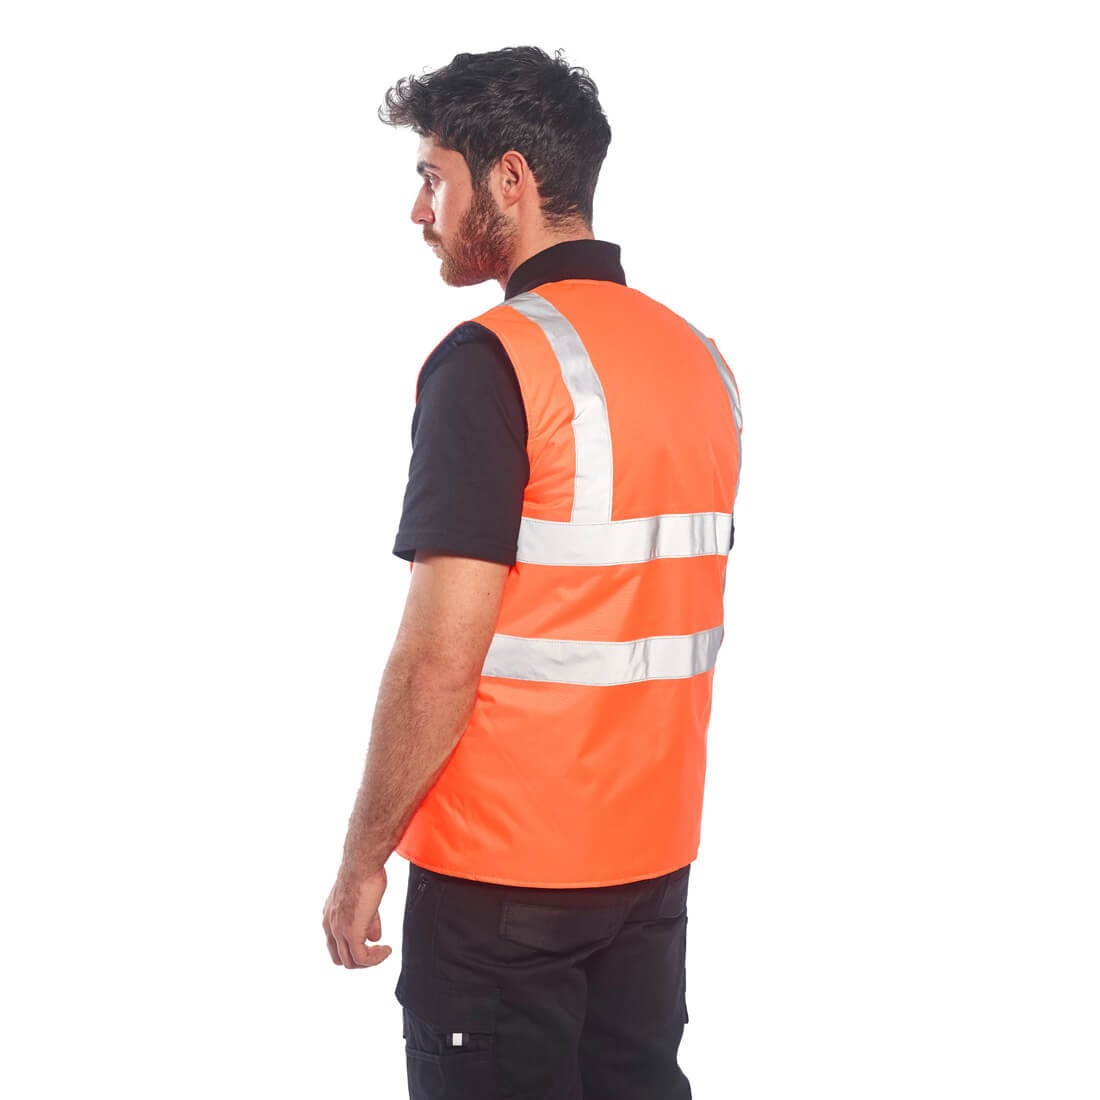 Wendebare Warnschutz-Weste - Arbeitskleidung